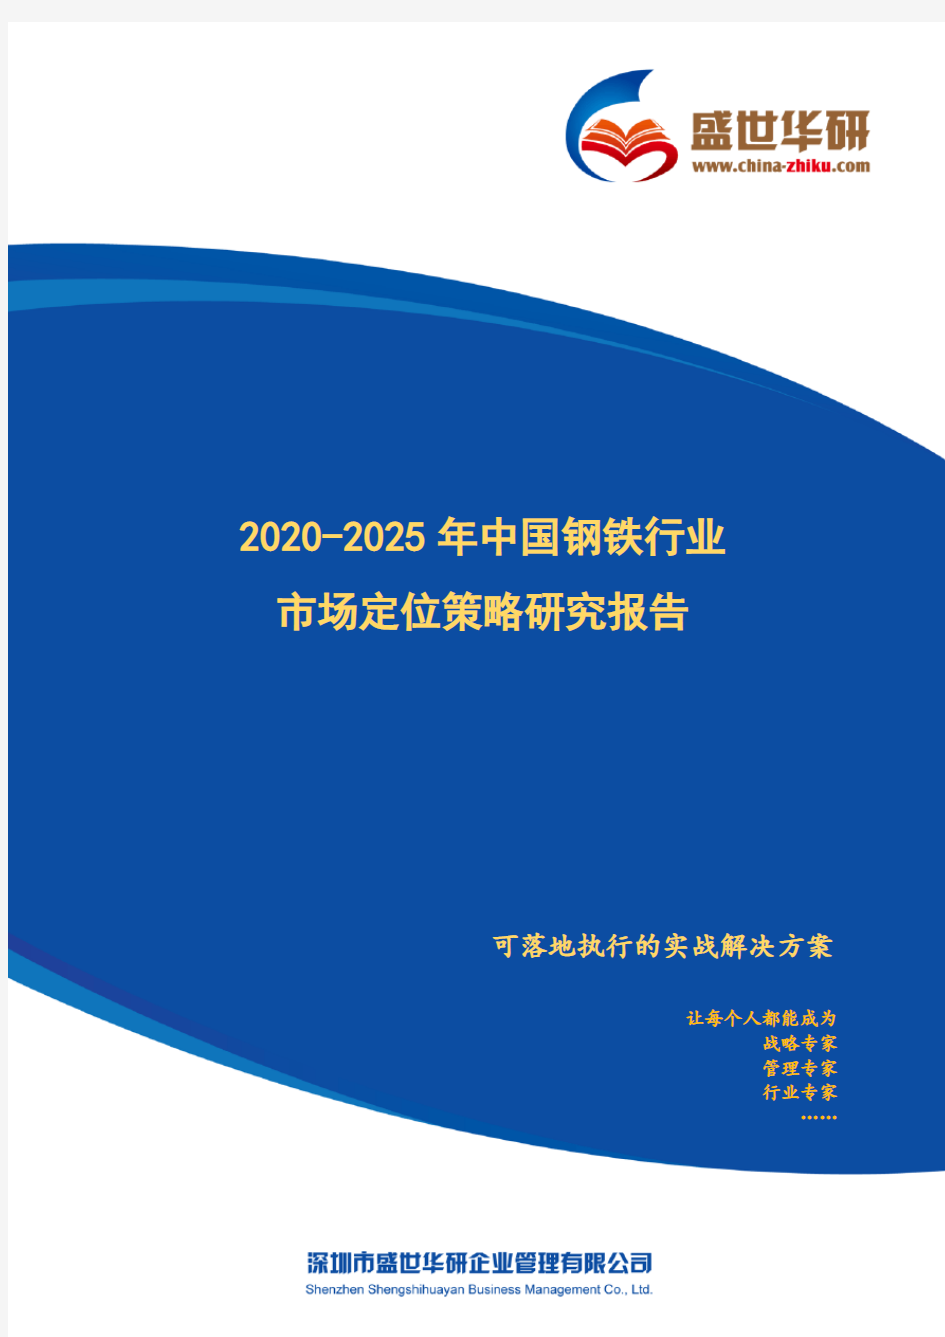 【完整版】2020-2025年中国钢铁行业市场定位策略研究报告